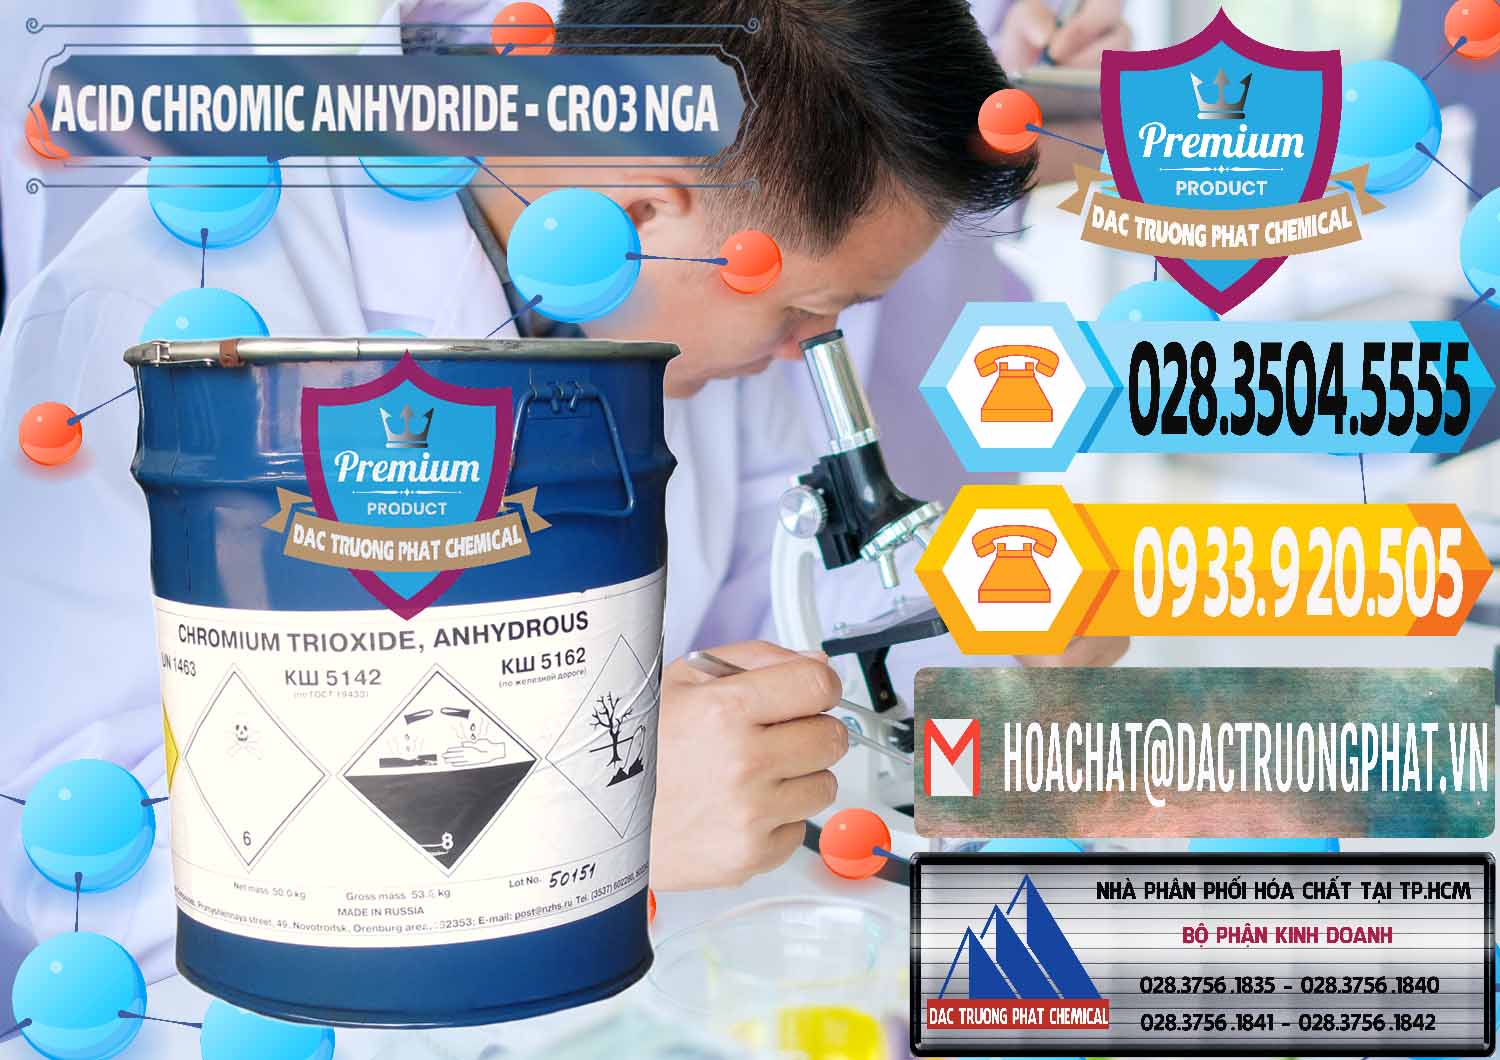 Cty bán và cung ứng Acid Chromic Anhydride - Cromic CRO3 Nga Russia - 0006 - Công ty chuyên bán và phân phối hóa chất tại TP.HCM - hoachattayrua.net